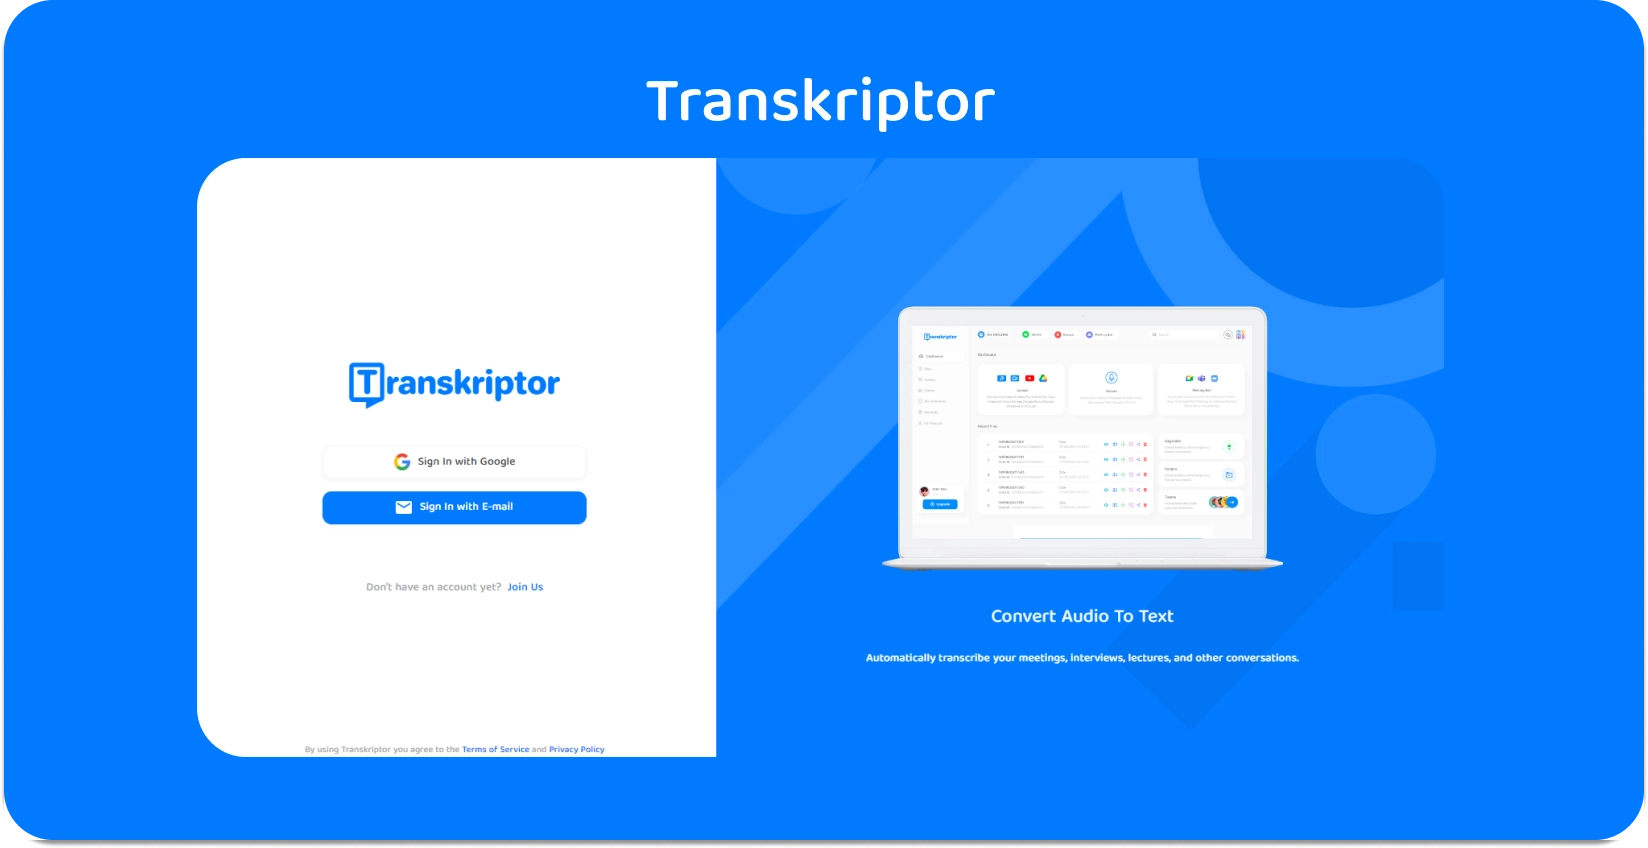 Интерфейс приложения Transkriptor, демонстрирующий простые услуги транскрипции аудио в текст для получения информации о медицинских записях.